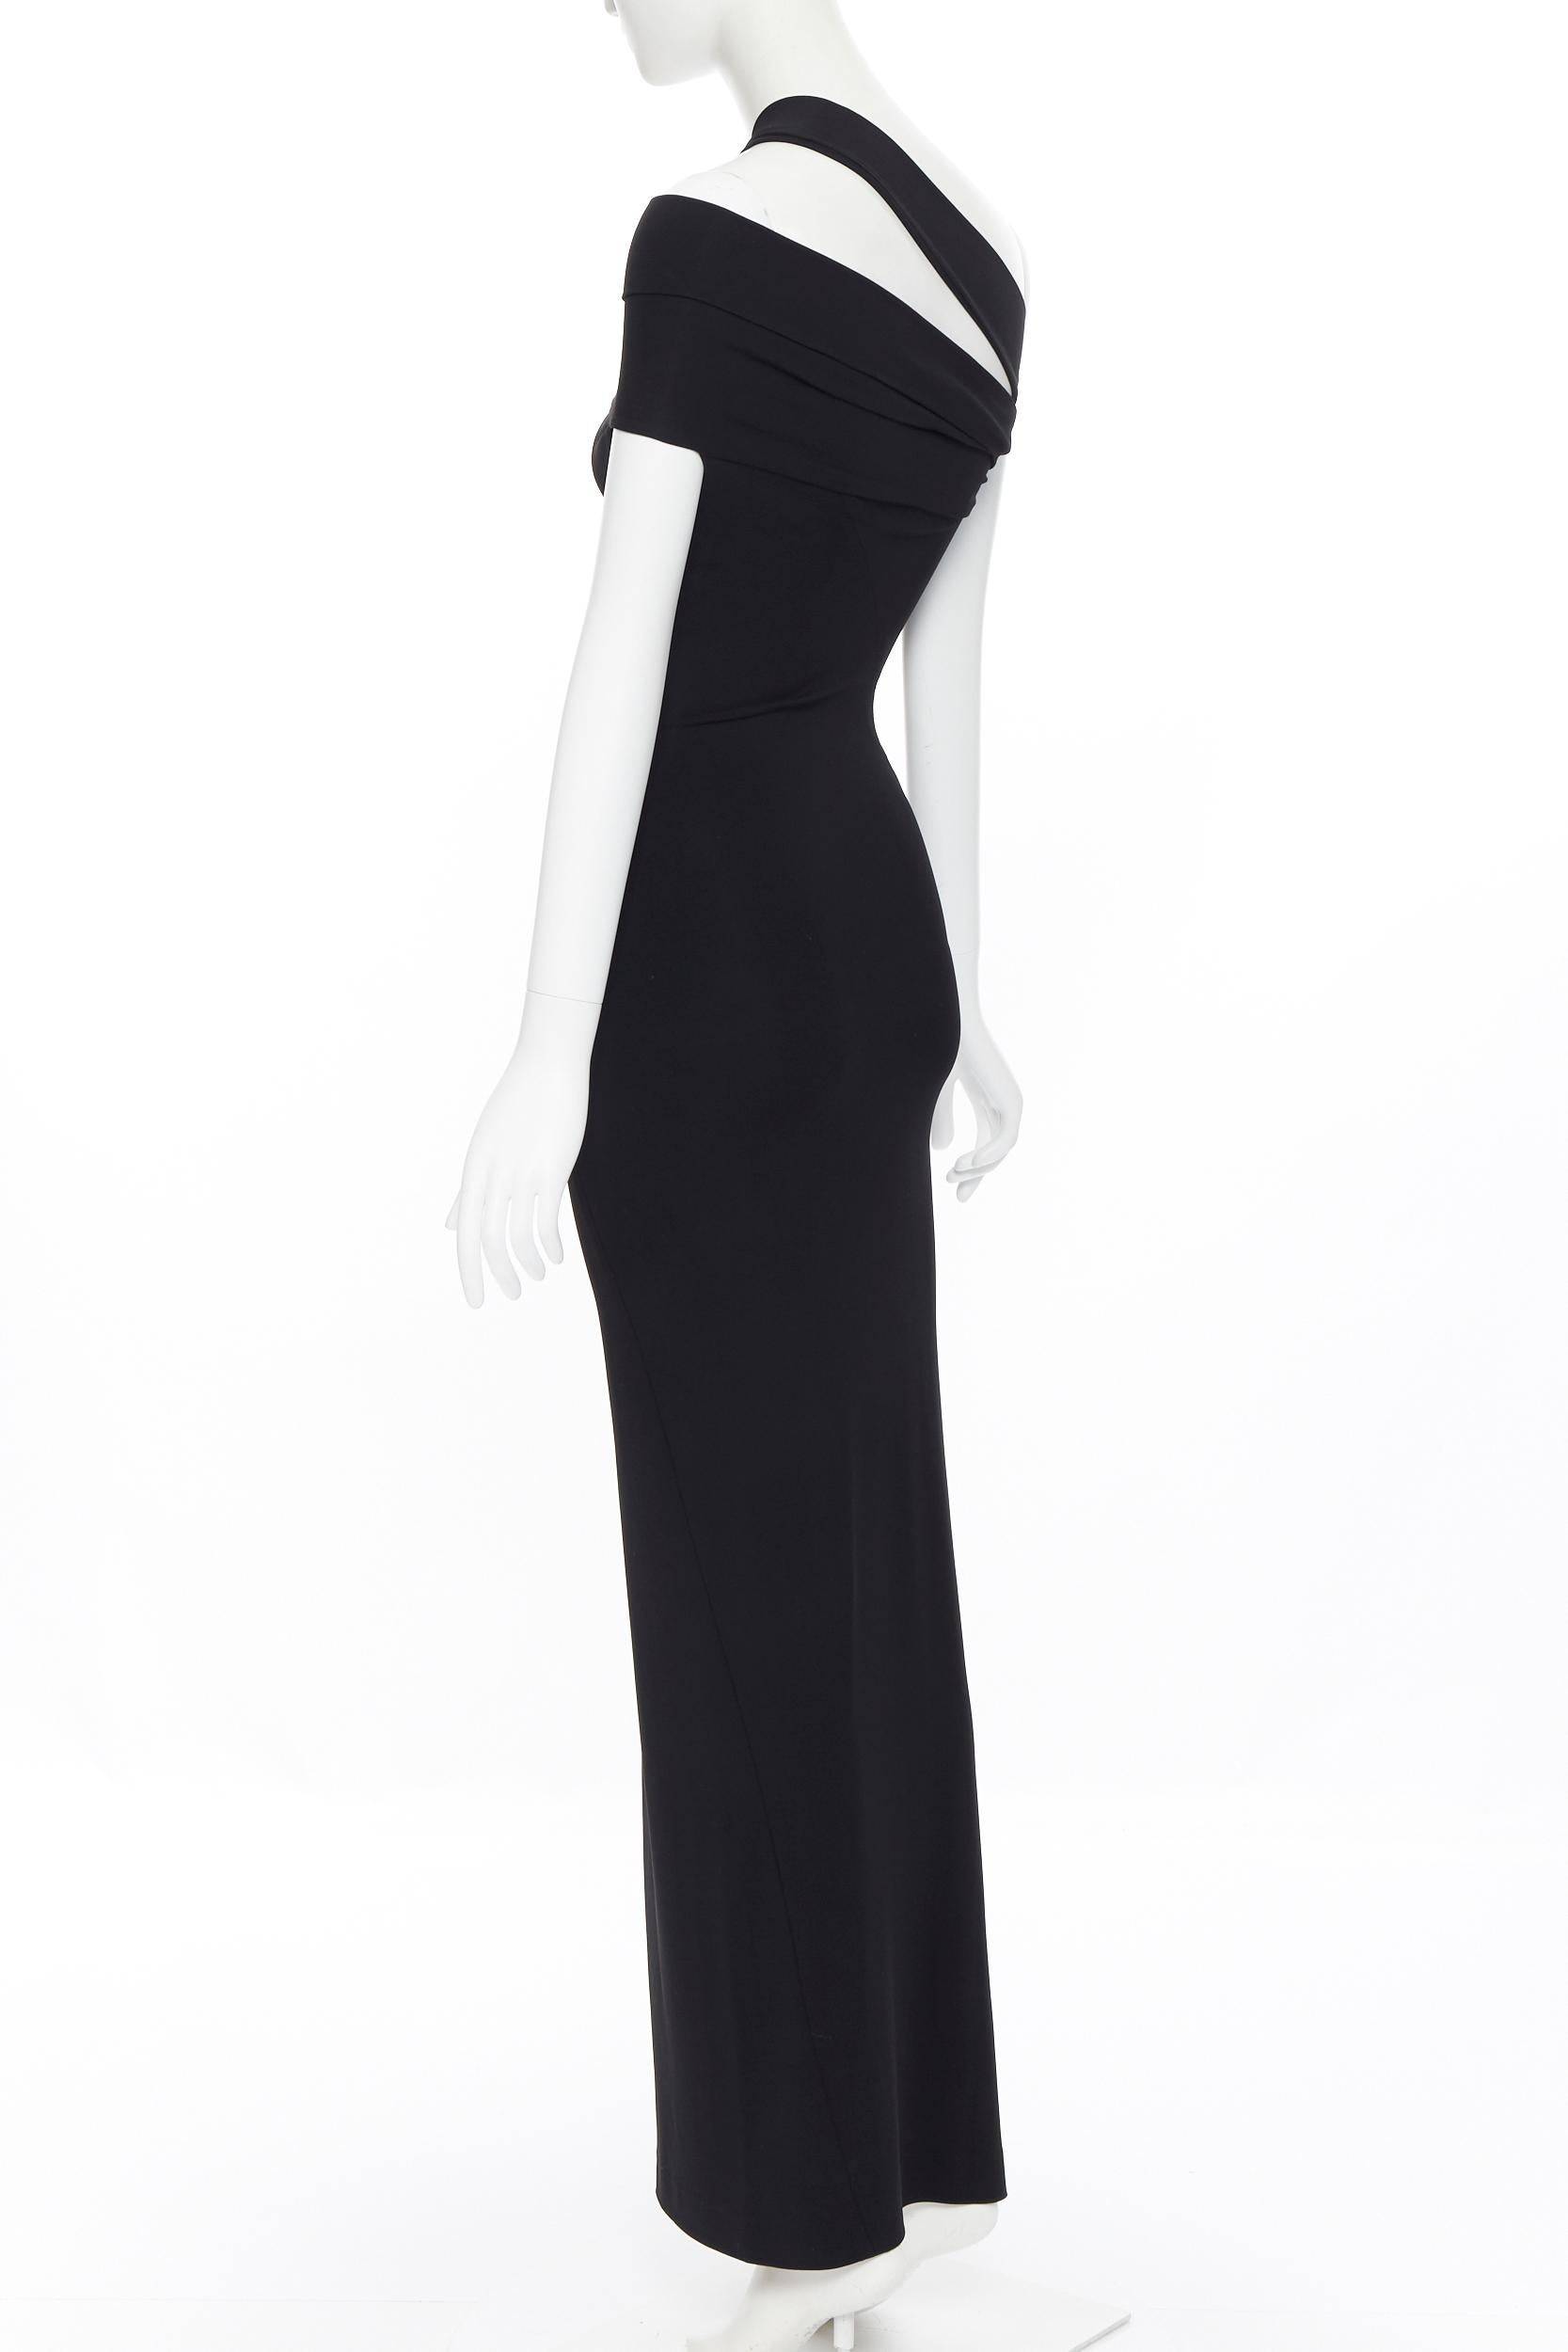 Women's DONNA KARAN black rayon stretchy asymmetric off shoulder bodycon gown dress XS